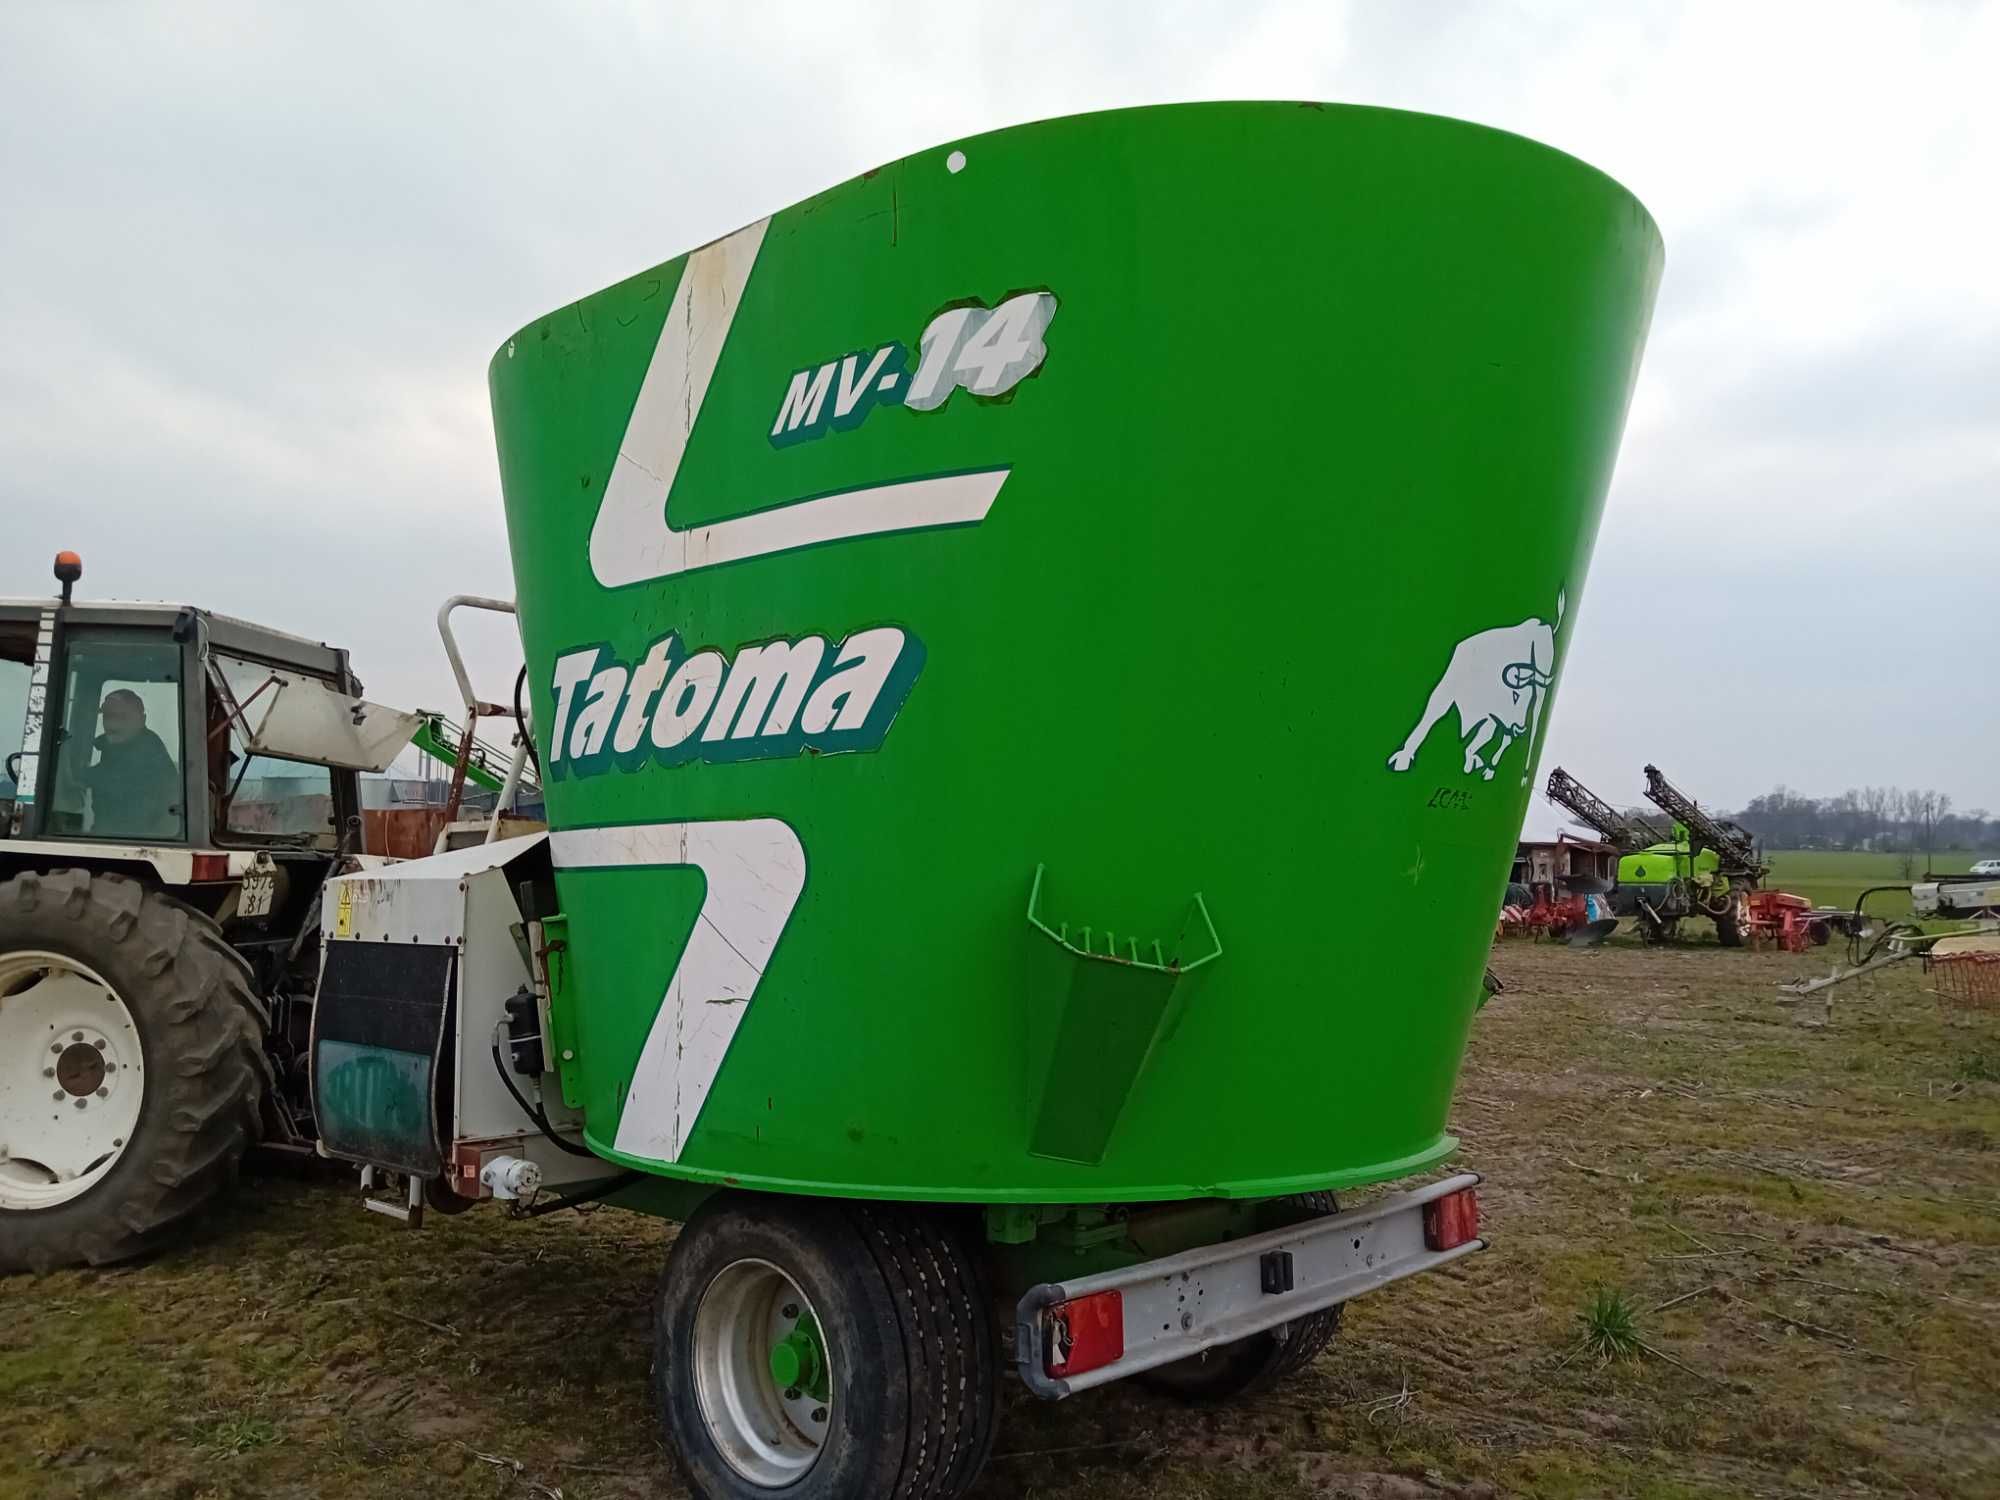 Paszowóz  Tatoma MV-14 Wóz paszowy 2014r jak nowy kennan 300